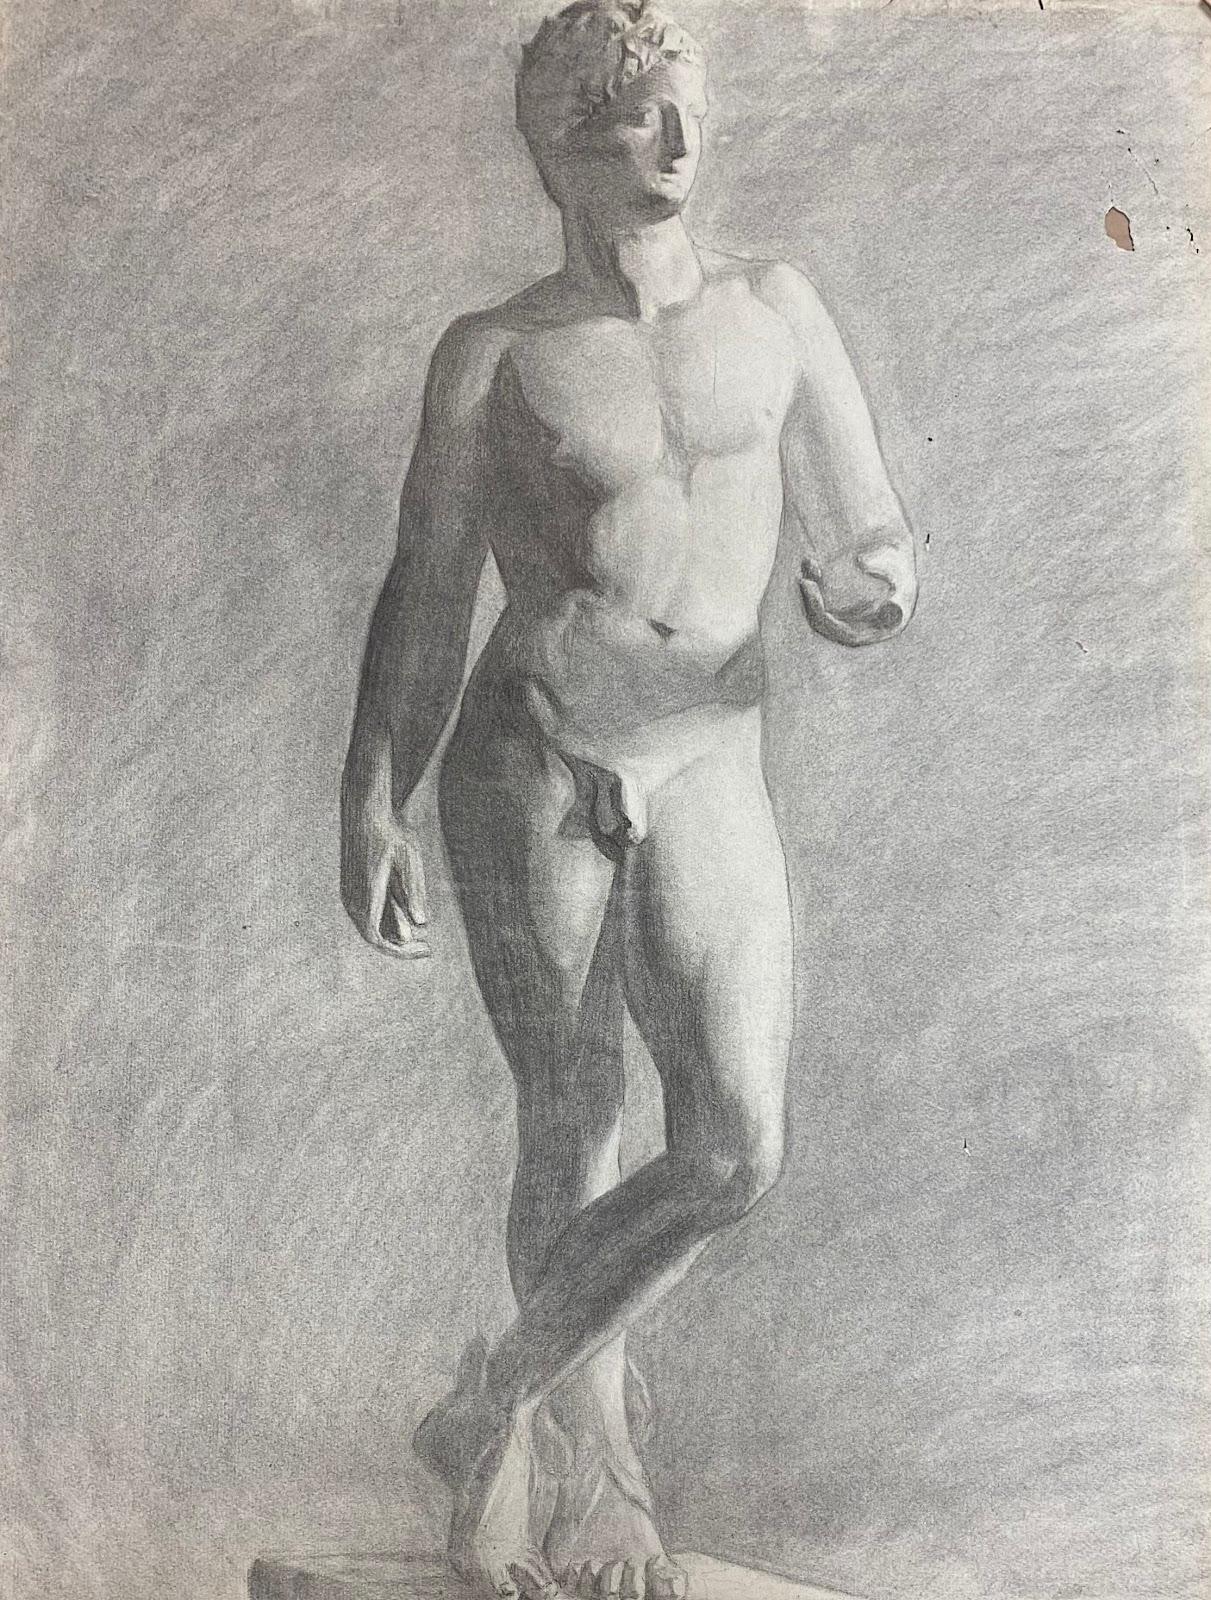 1900s Französisch Atelier Akademische Zeichnung Porträt des klassischen männlichen Aktes Skulptur